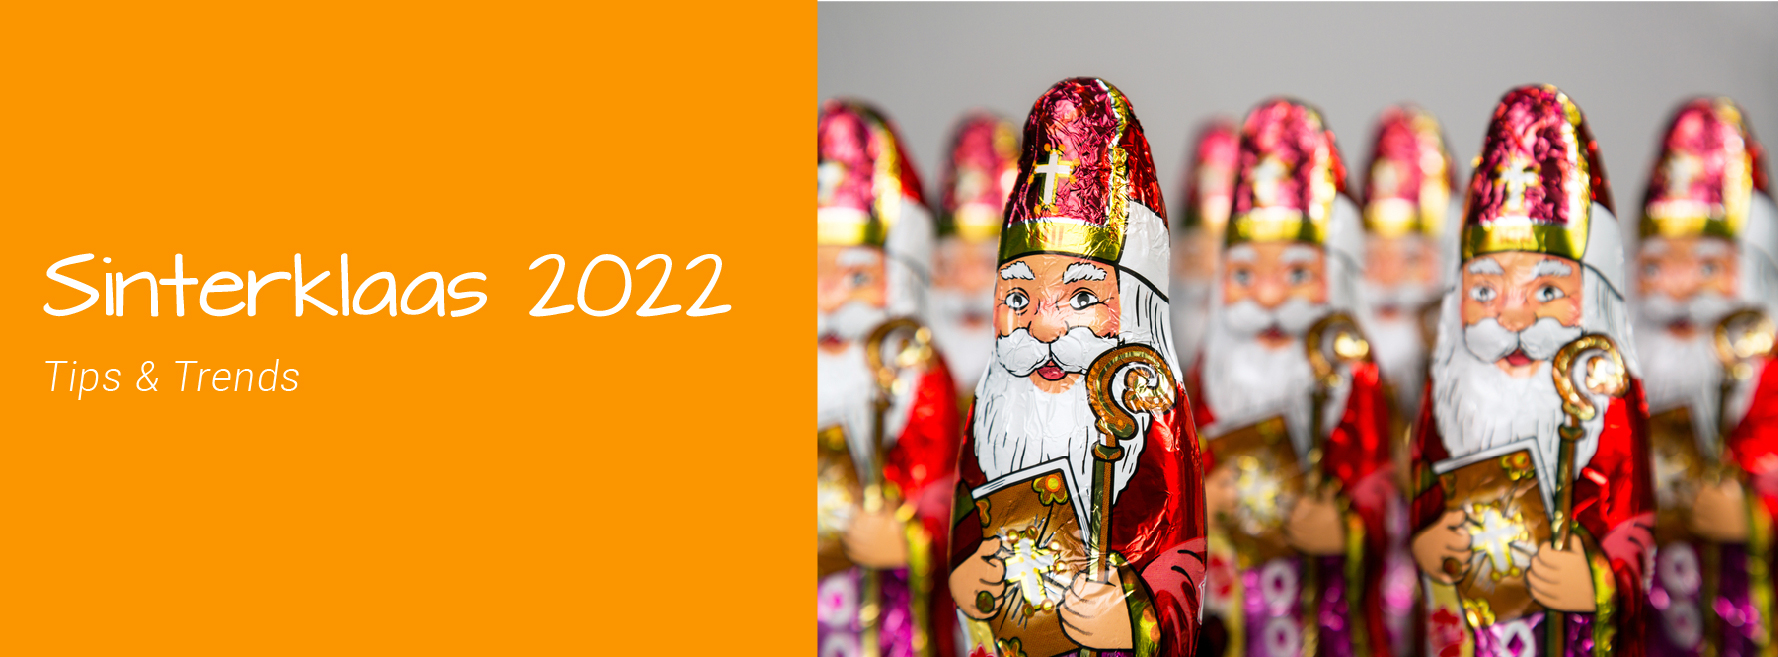 Tips & trends Sinterklaas 2022 Robitex - Gifts Premiums Promotionals